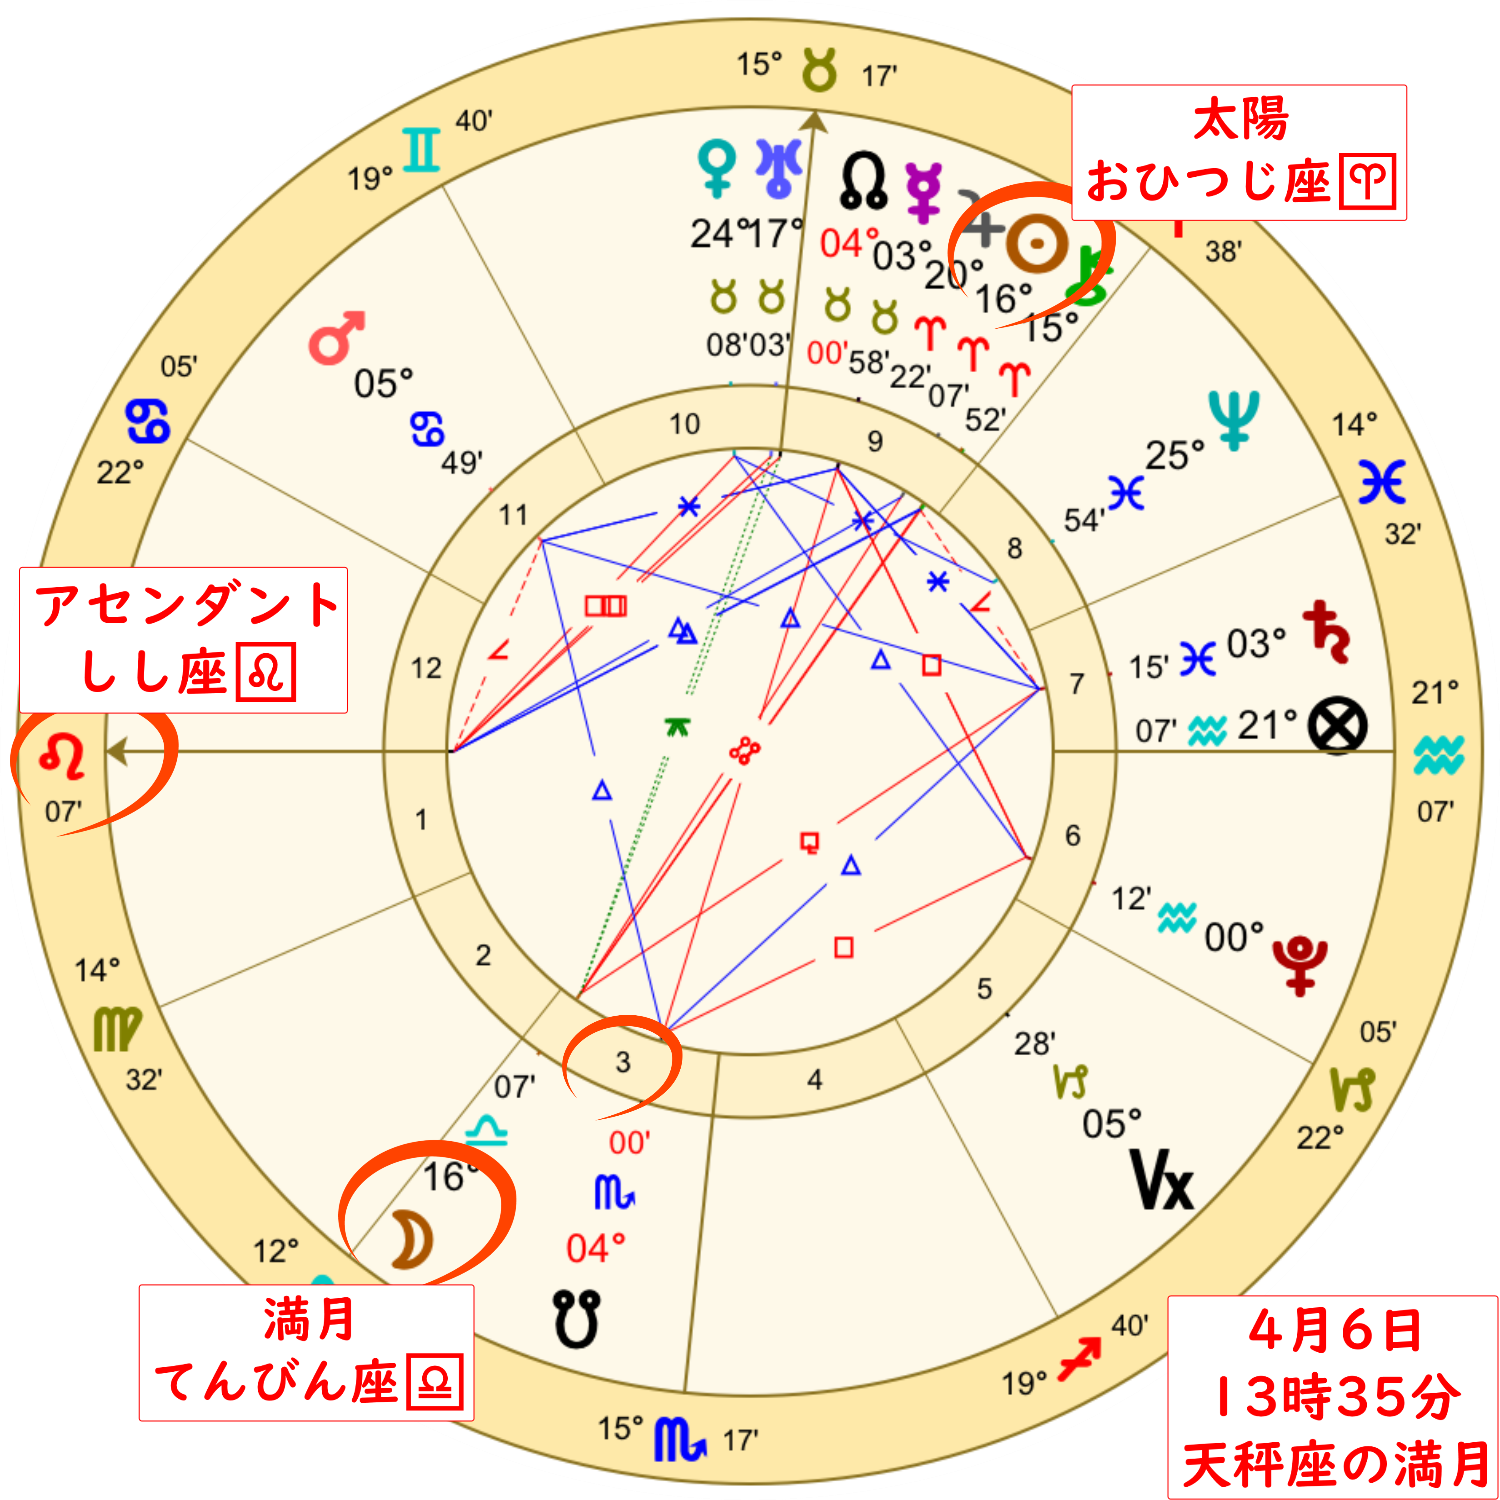 4月6日の天秤座の満月のホロスコープ解説画像